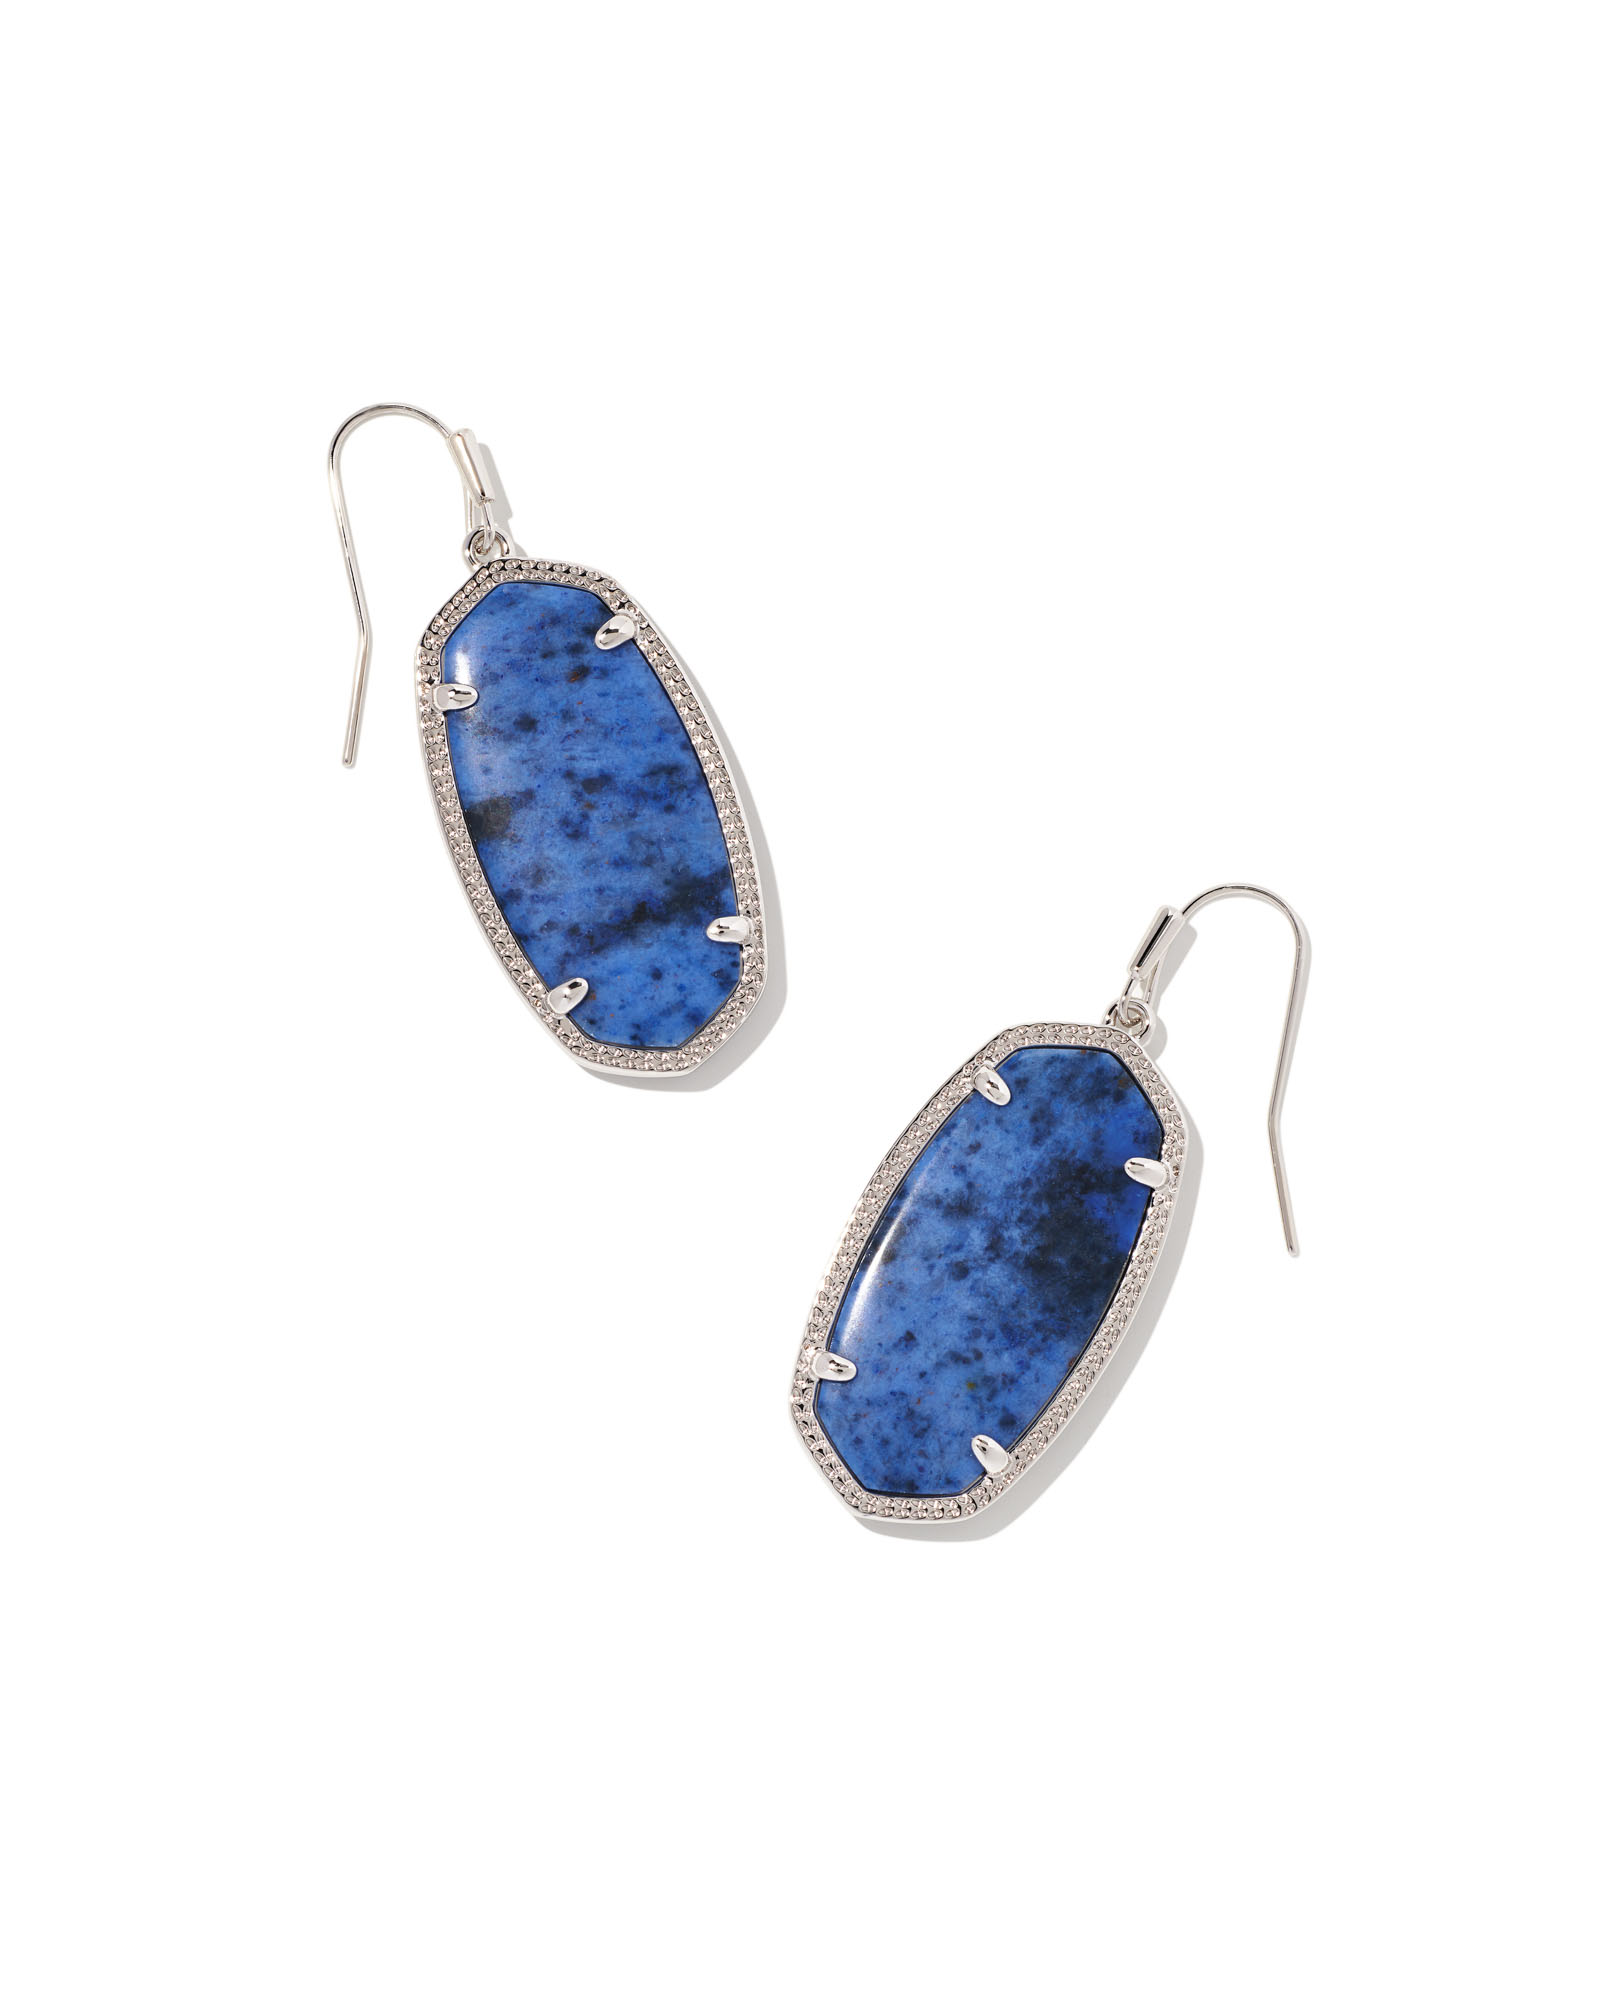 Elle Silver Drop Earrings in Blue Dumortierite | Kendra Scott